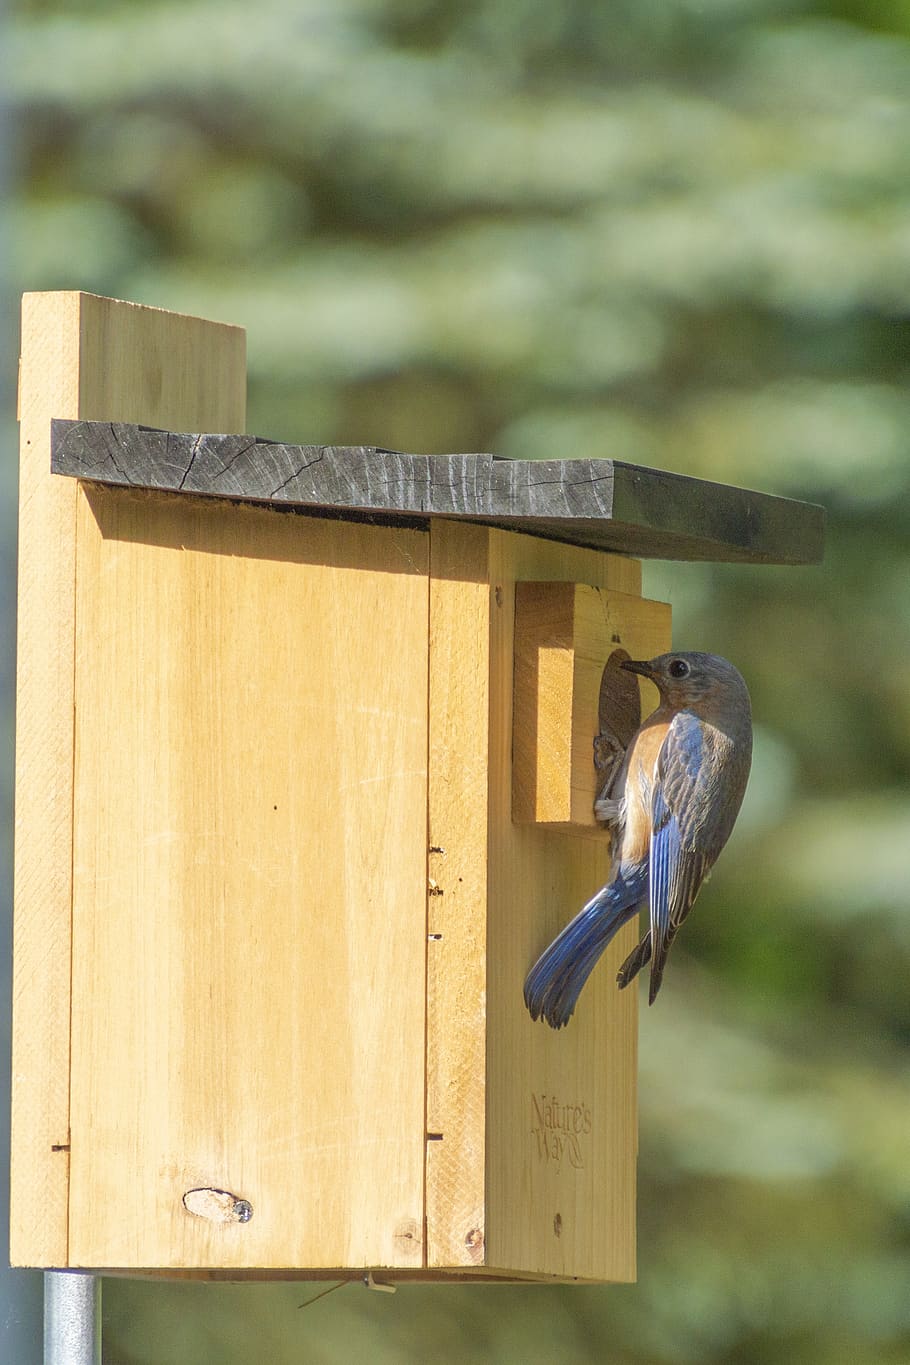 bluebird, birdhouse, perch, box, avian, nest, bird, wood - material, focus on foreground, day